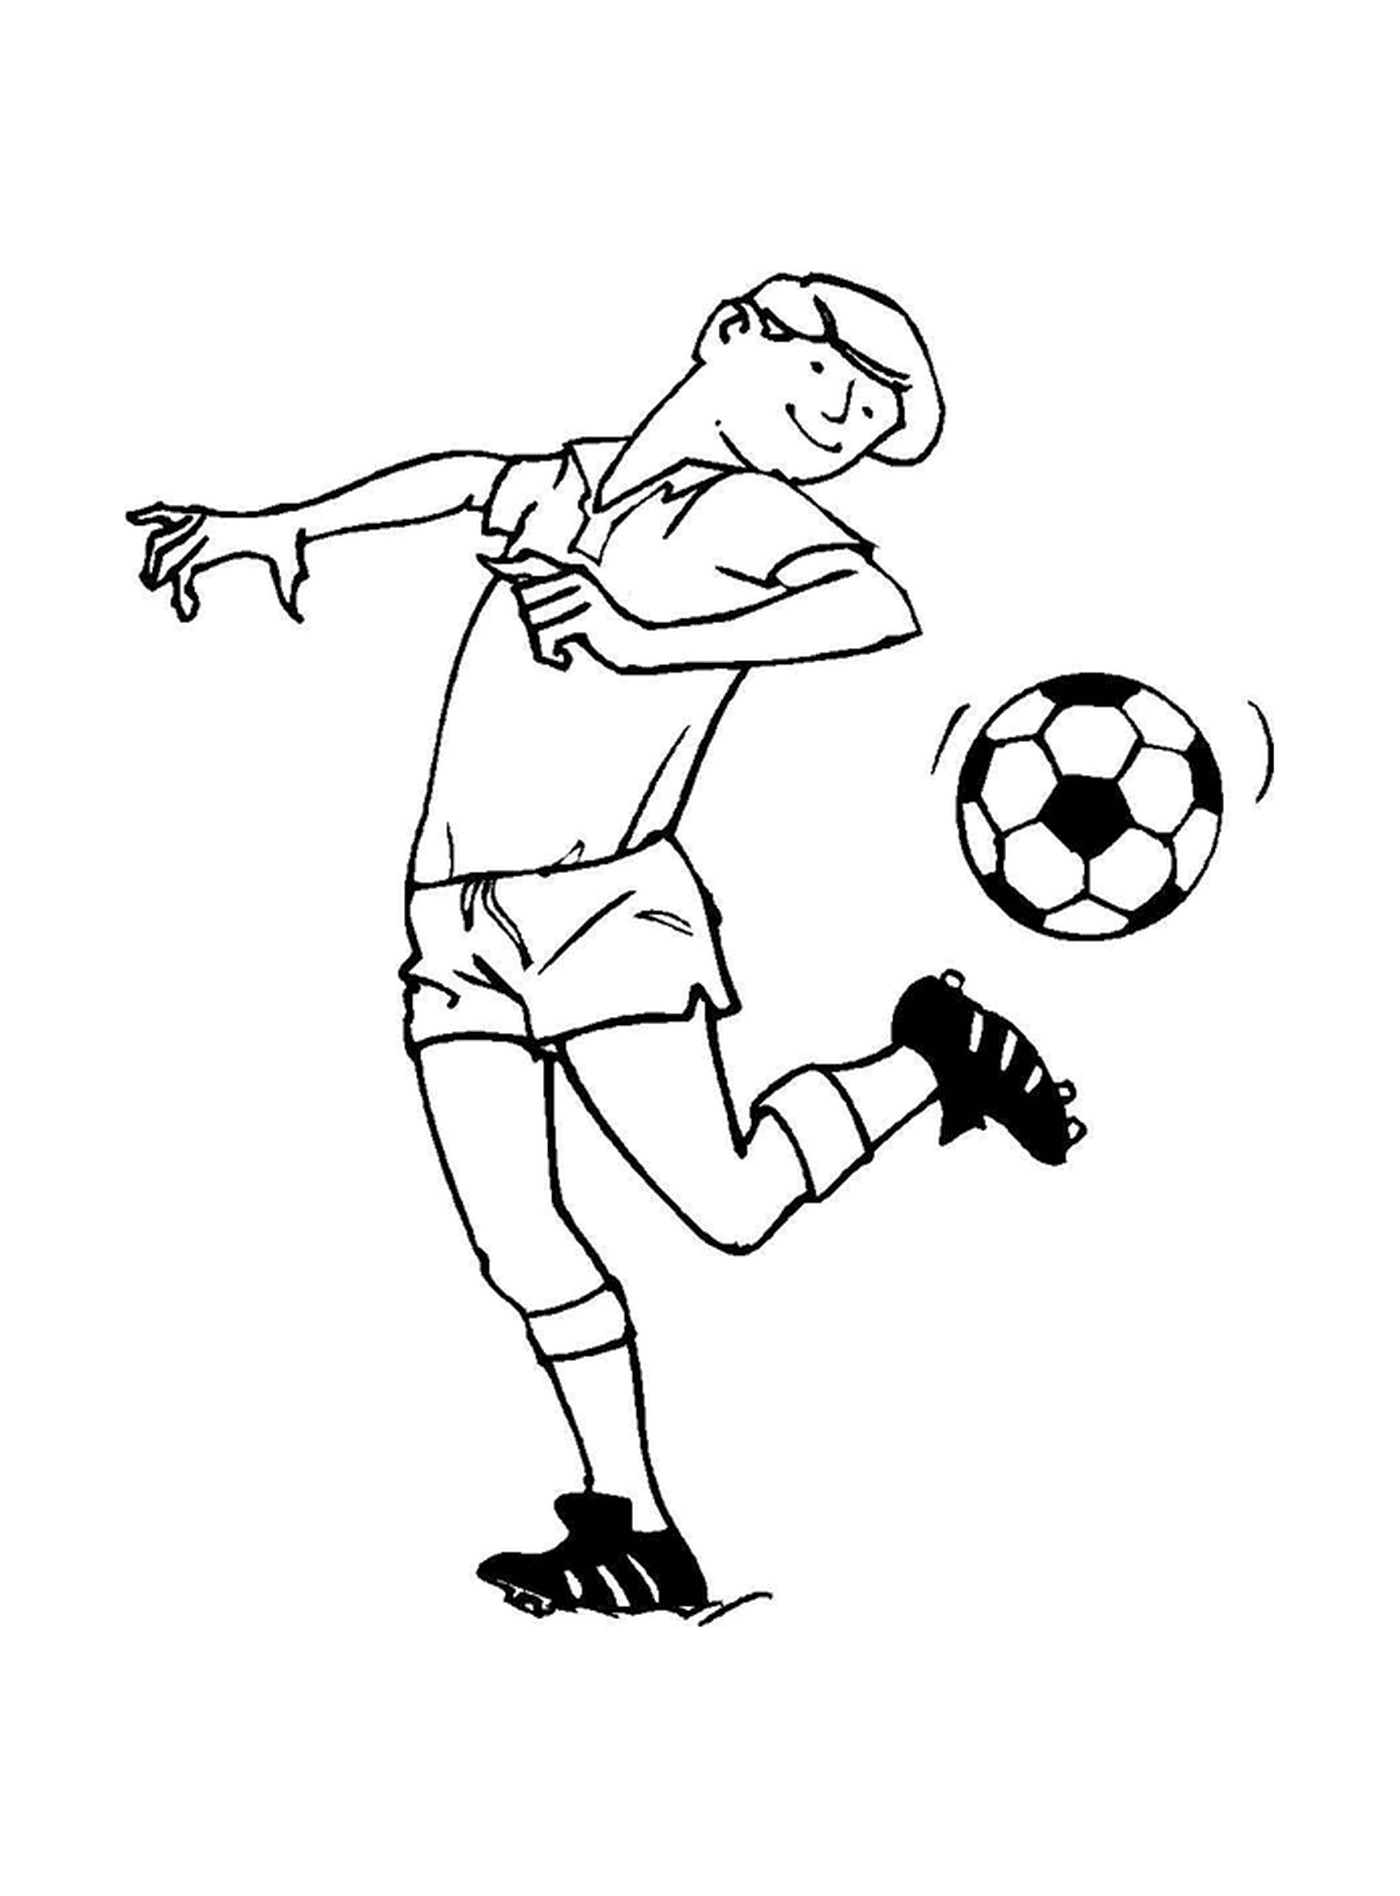   Un footballeur en action 